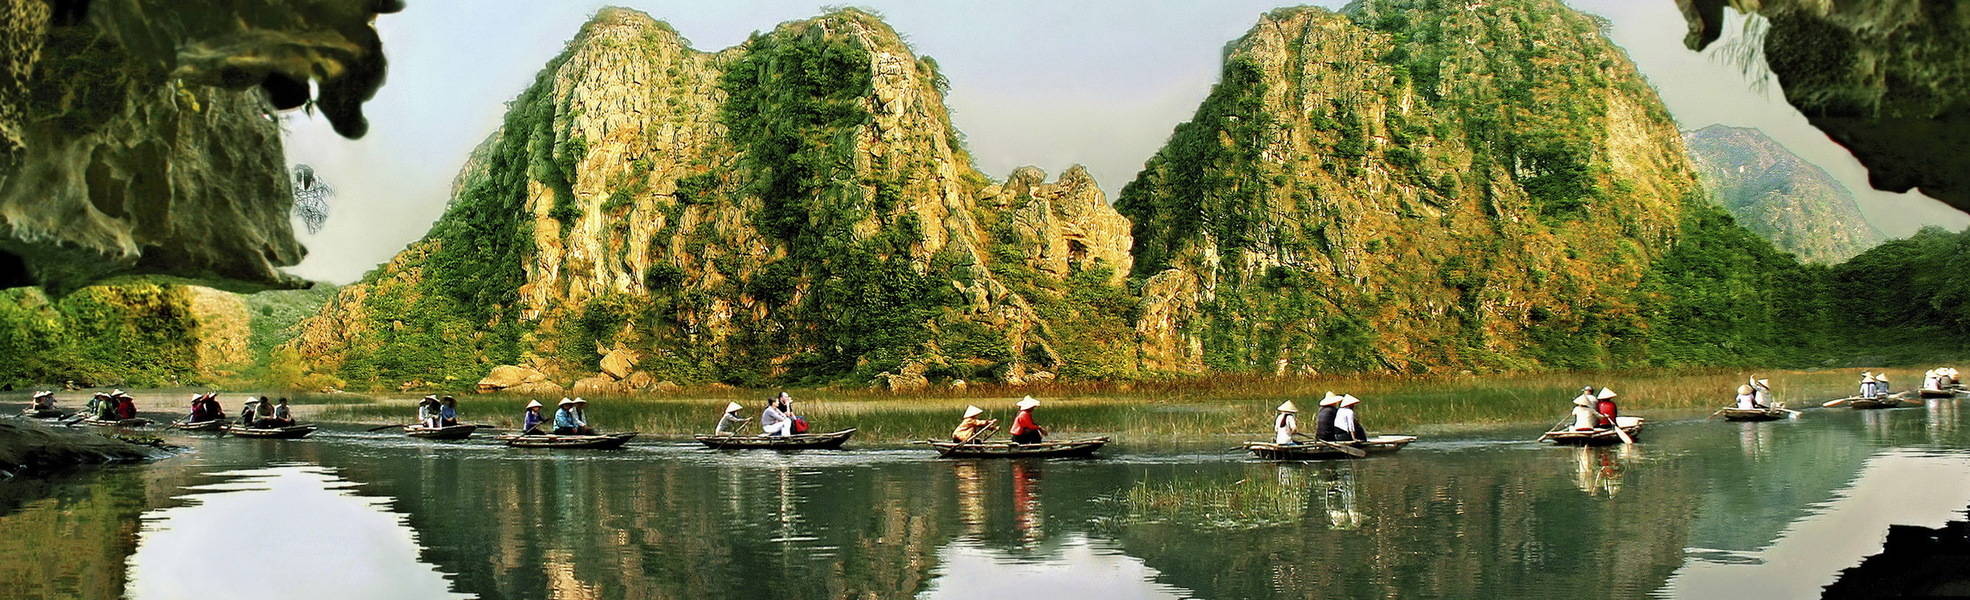 Volunteer Reise in Vietnam